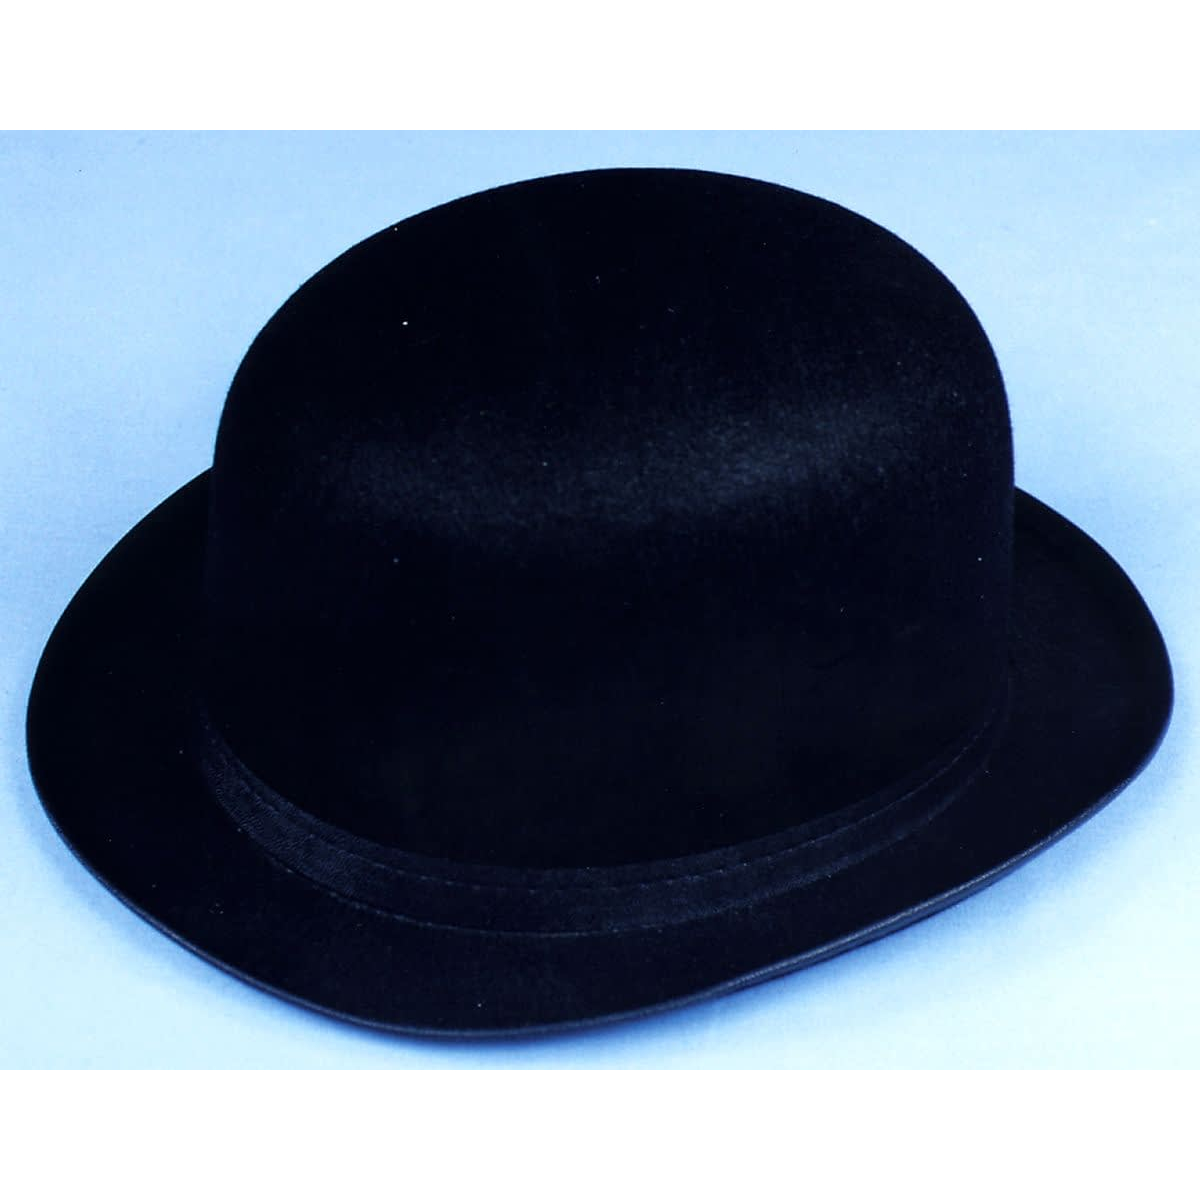 Плотная шляпа. Шляпа детская черная. Шляпа для мальчика черная. Ребенок в черной шляпе. Шляпа детская черная классическая.